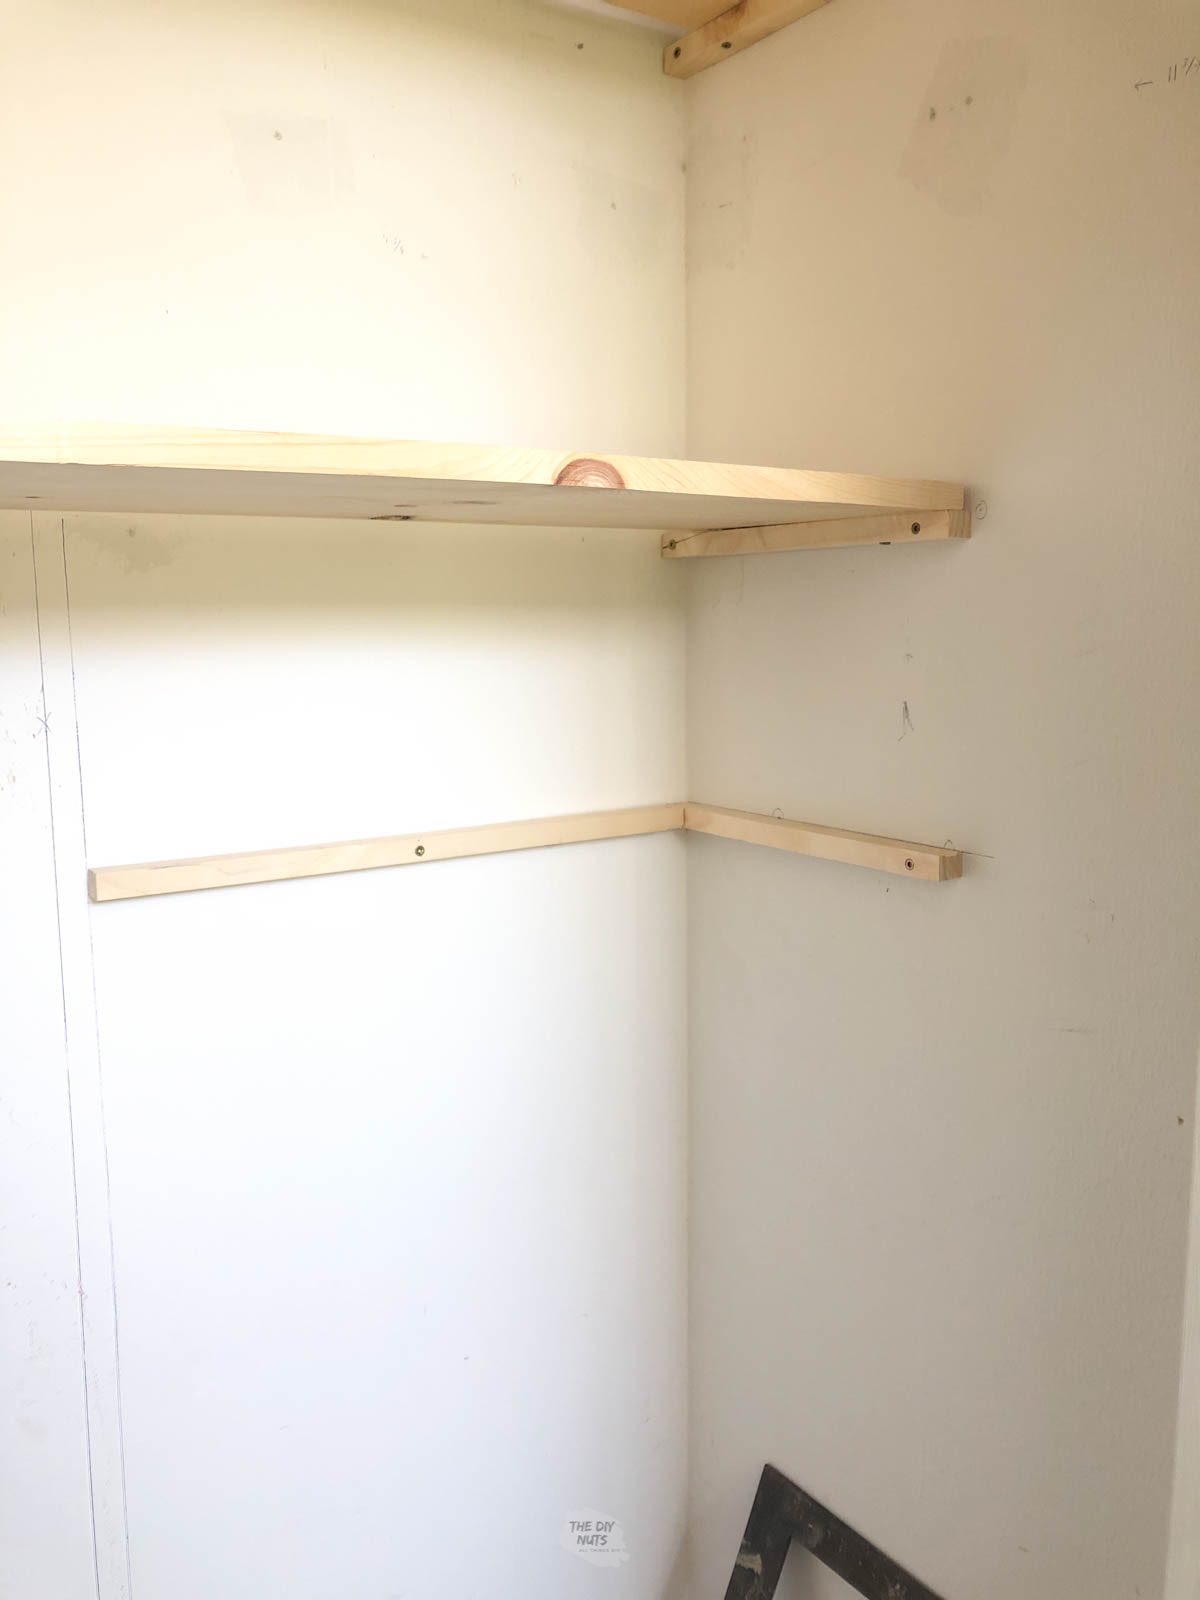 wooden corner bracket shelf under wooden closet shelf.